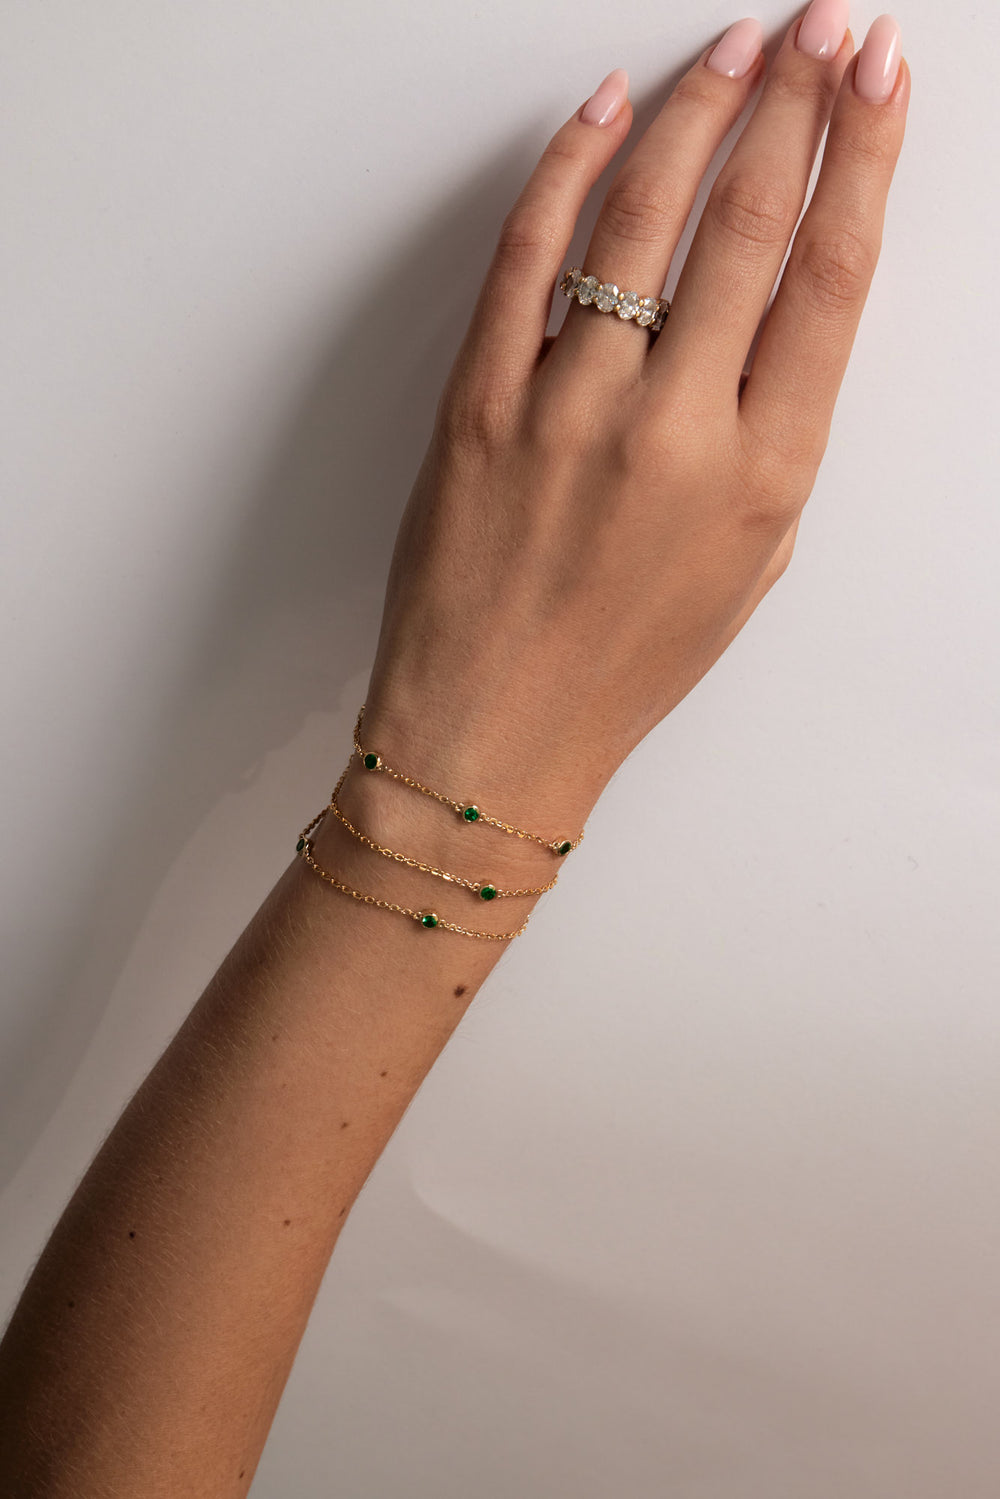 5 Emerald Bracelet | 9K White Gold